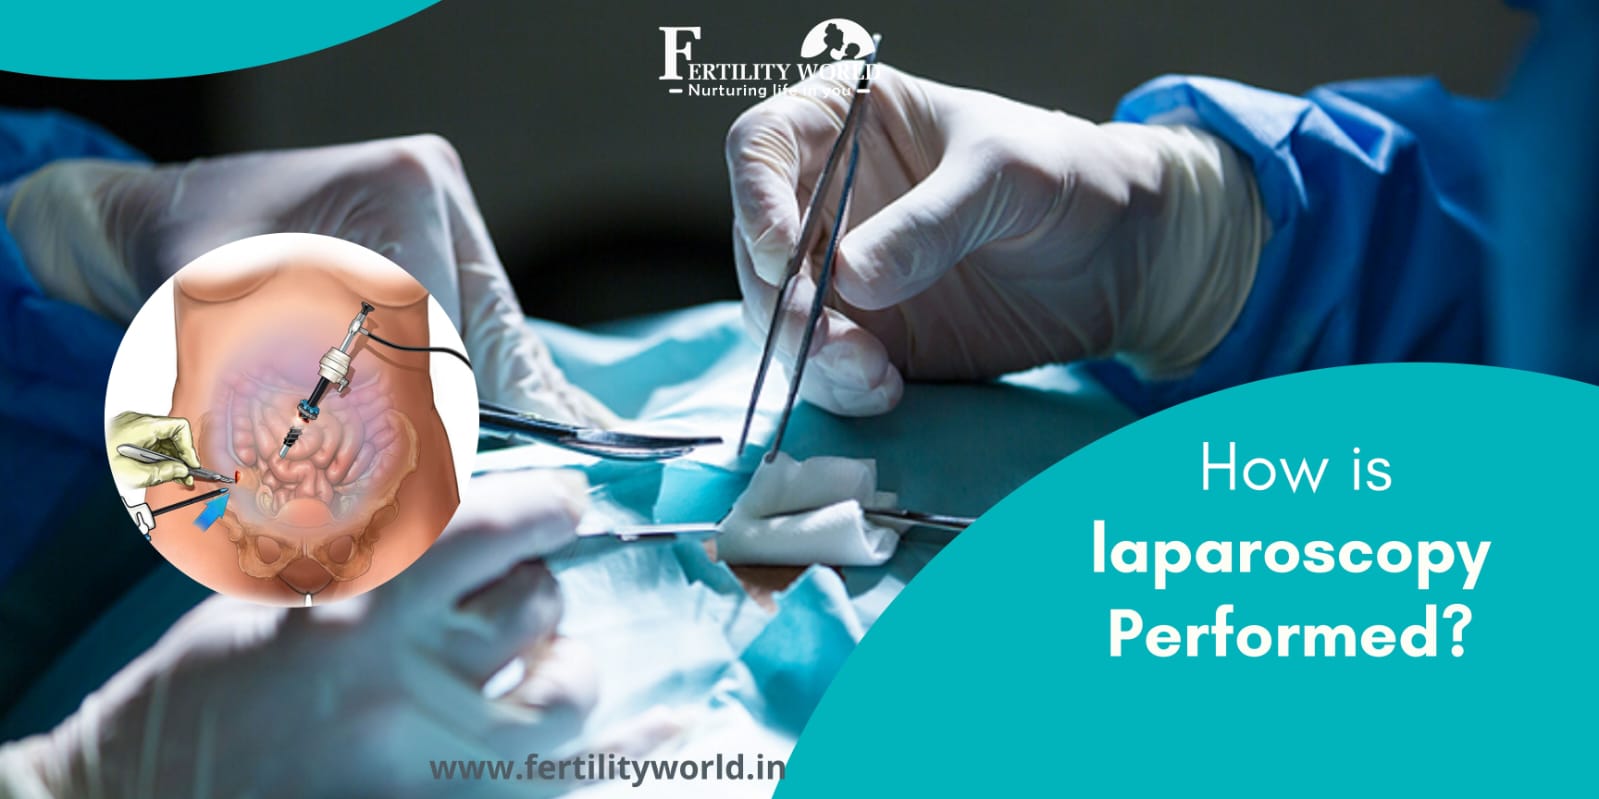 How is laparoscopy performed?